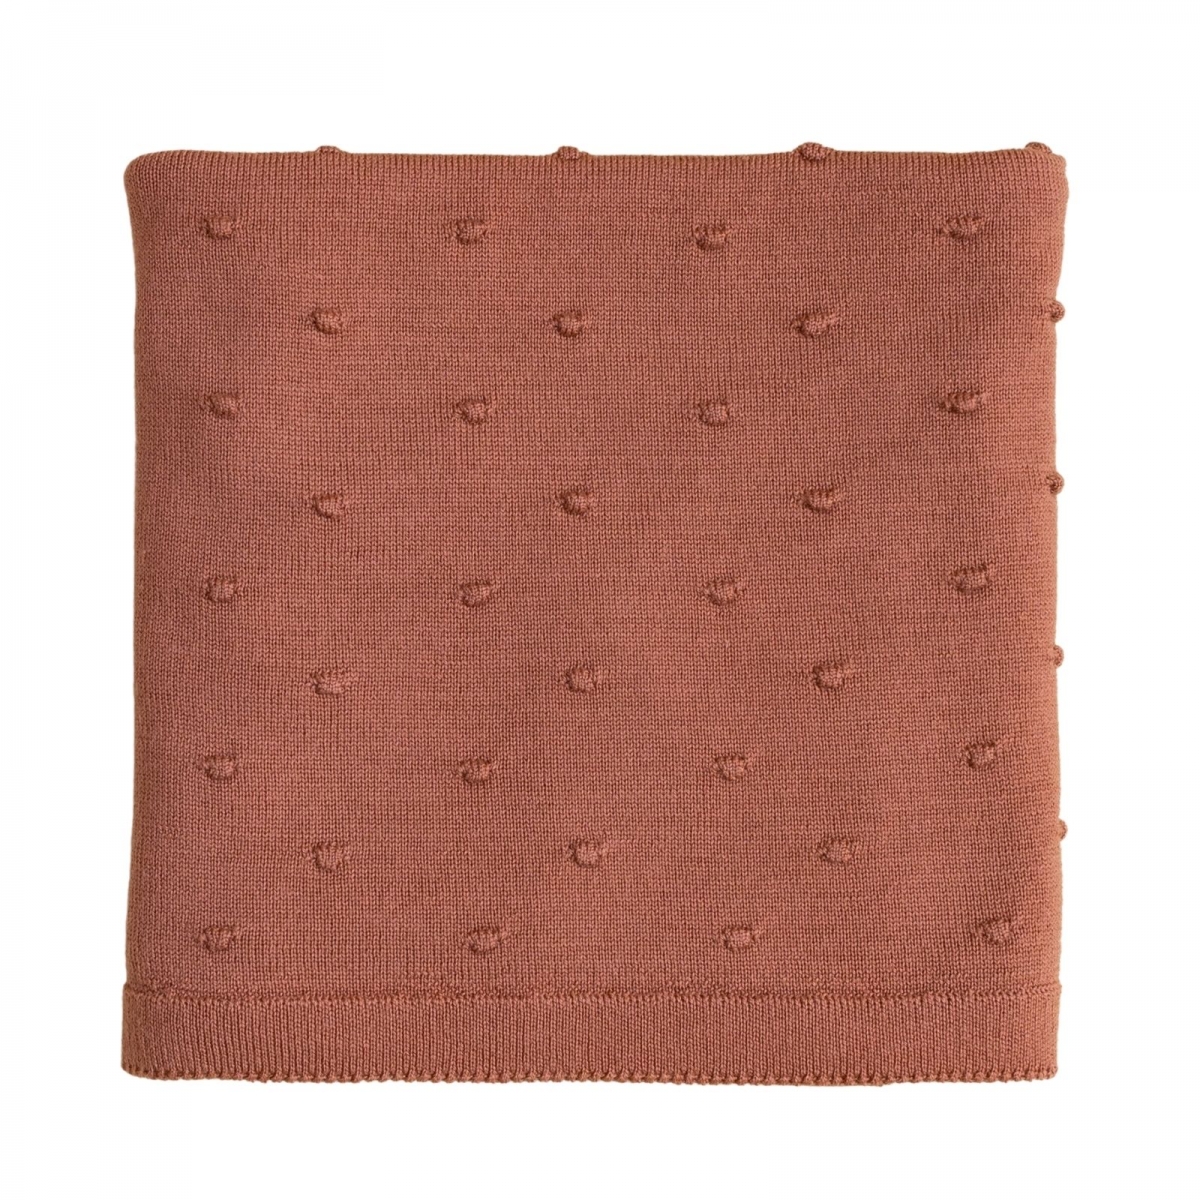 Hvid - Blanket Bonnie brick - Одеяла и подгузники -  